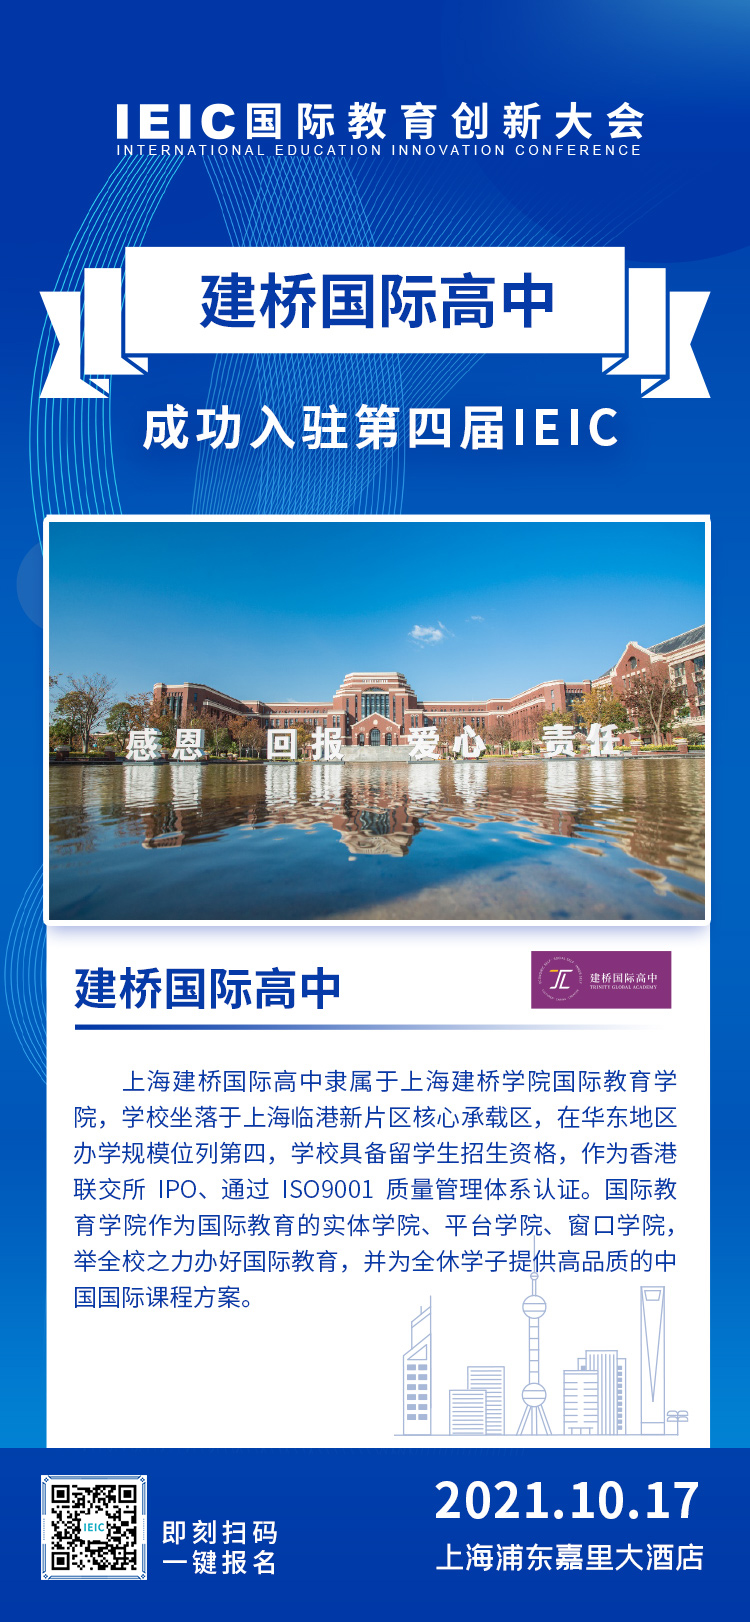 上海建桥国际高中成功入驻参展2021年第四届IEIC国际教育创新大会